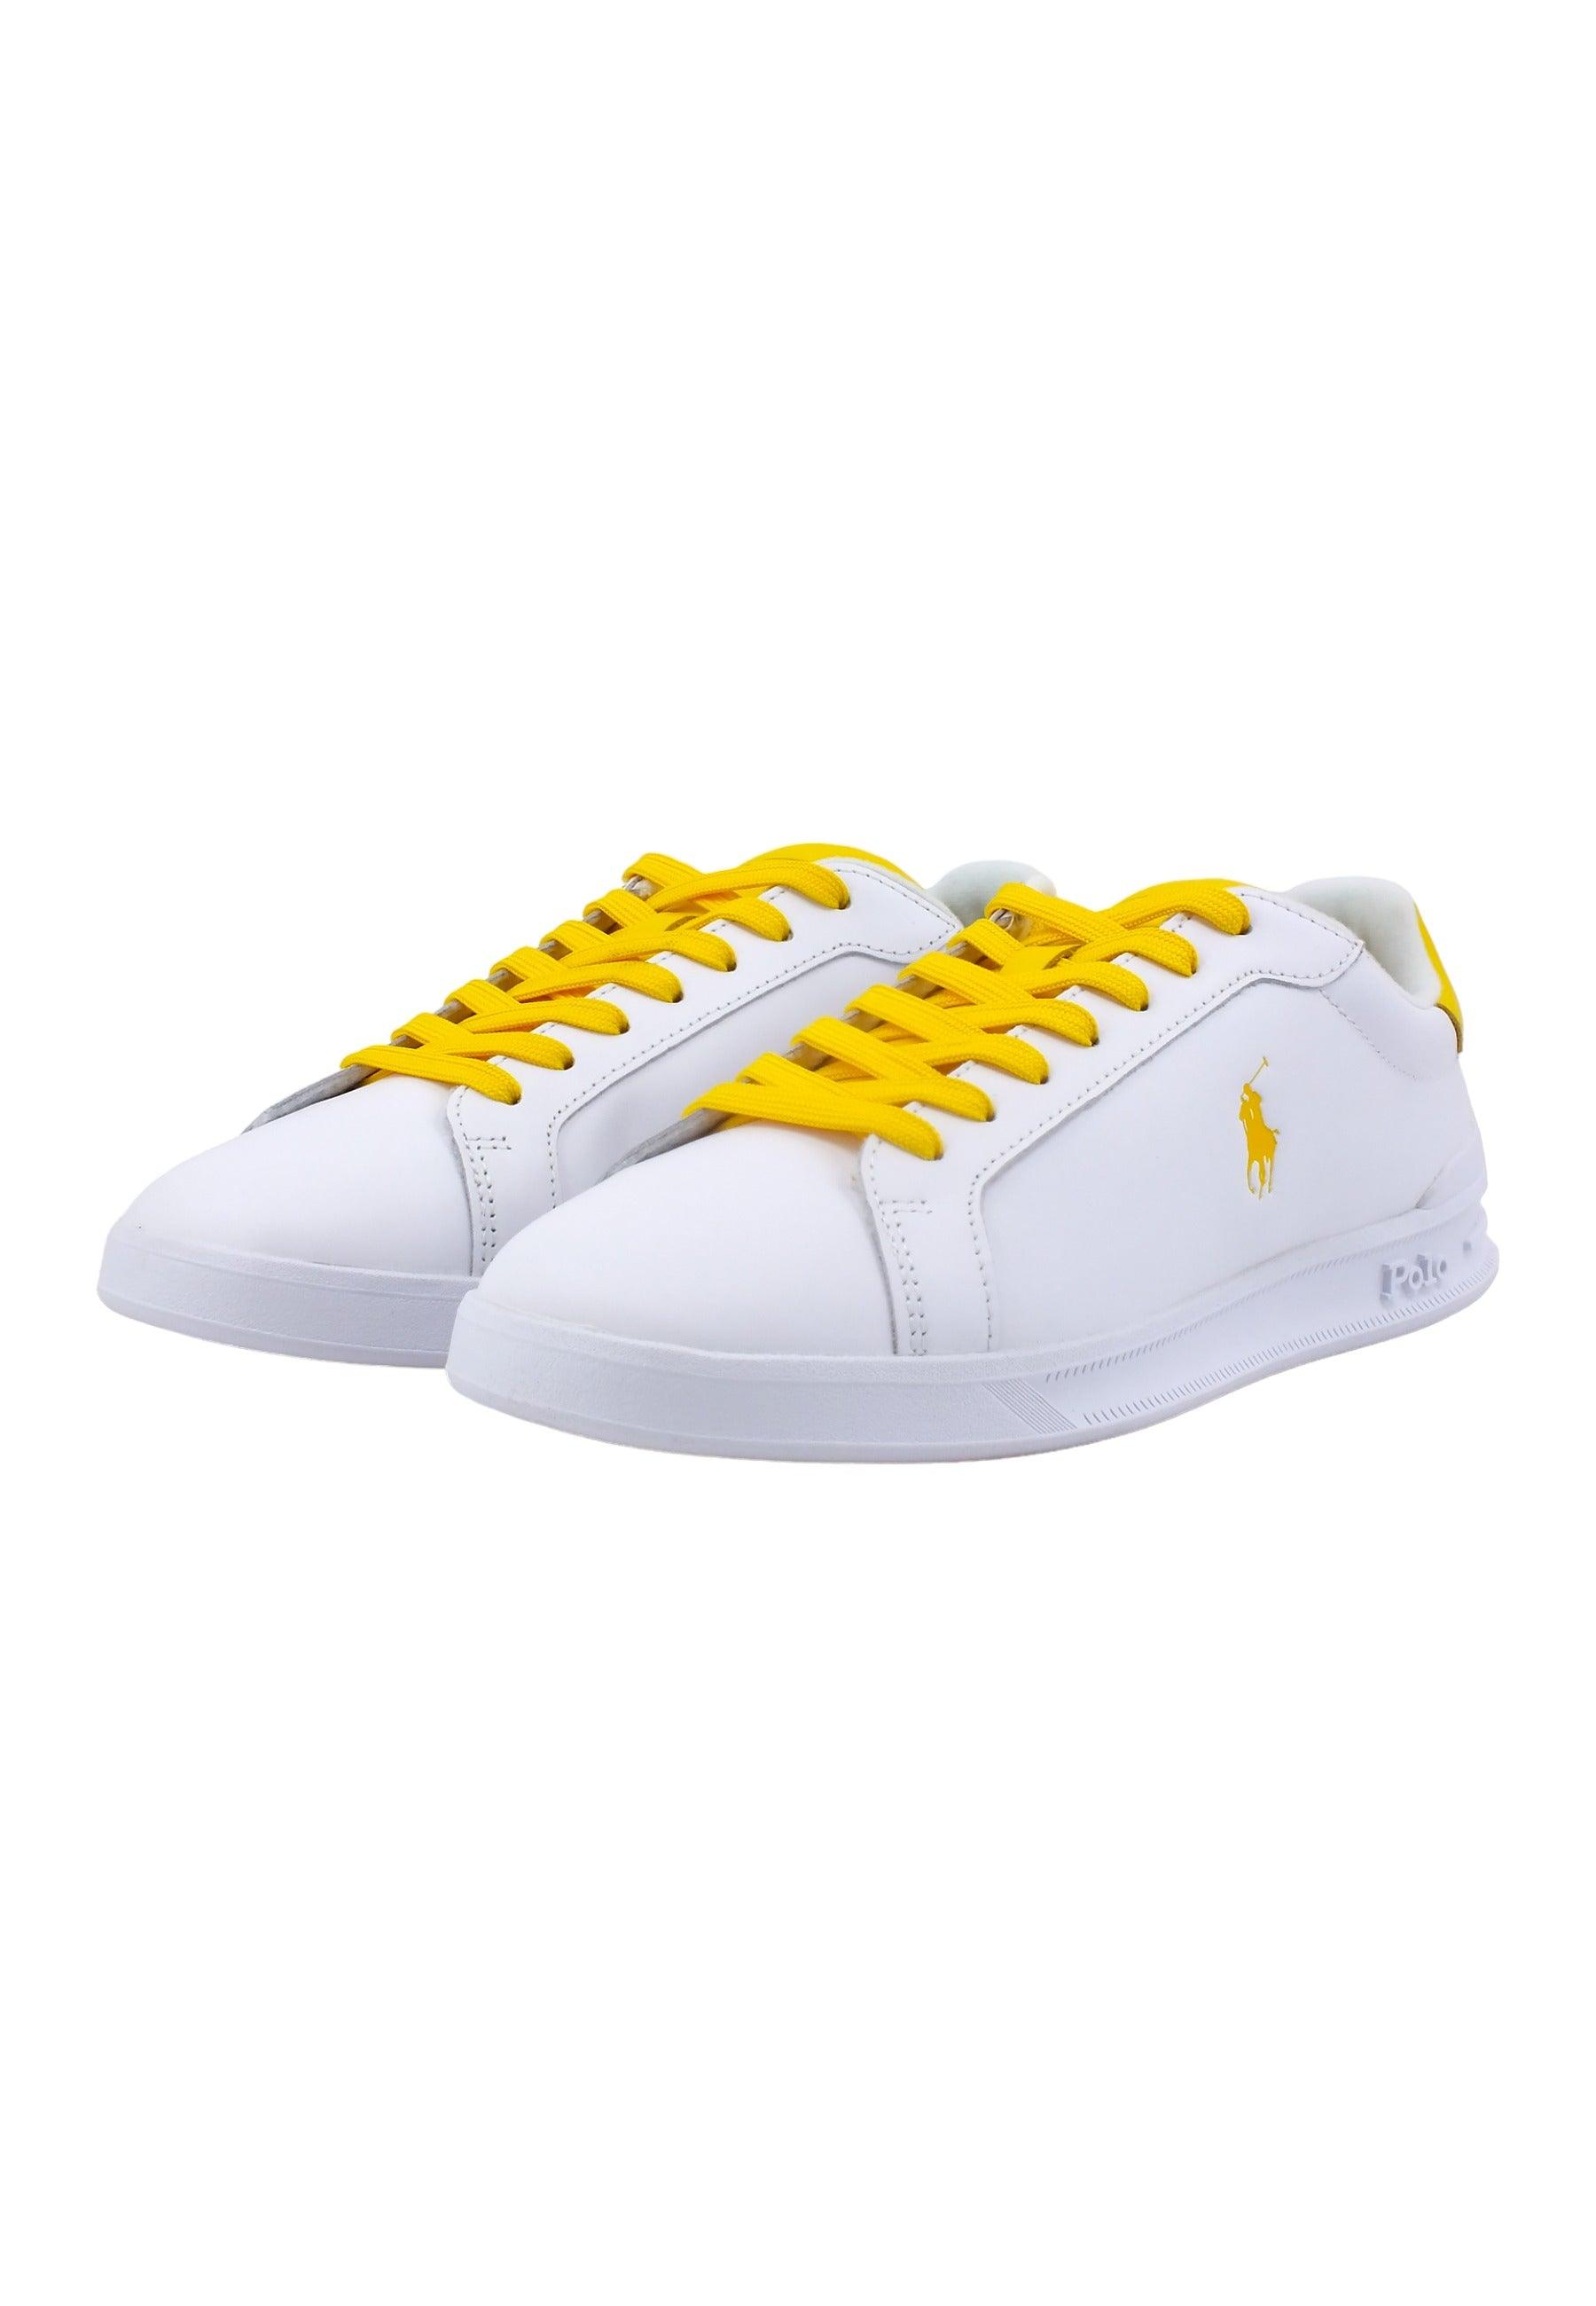 POLO RALPH LAUREN Sneaker Uomo White Yellow 809923929003U - Sandrini Calzature e Abbigliamento